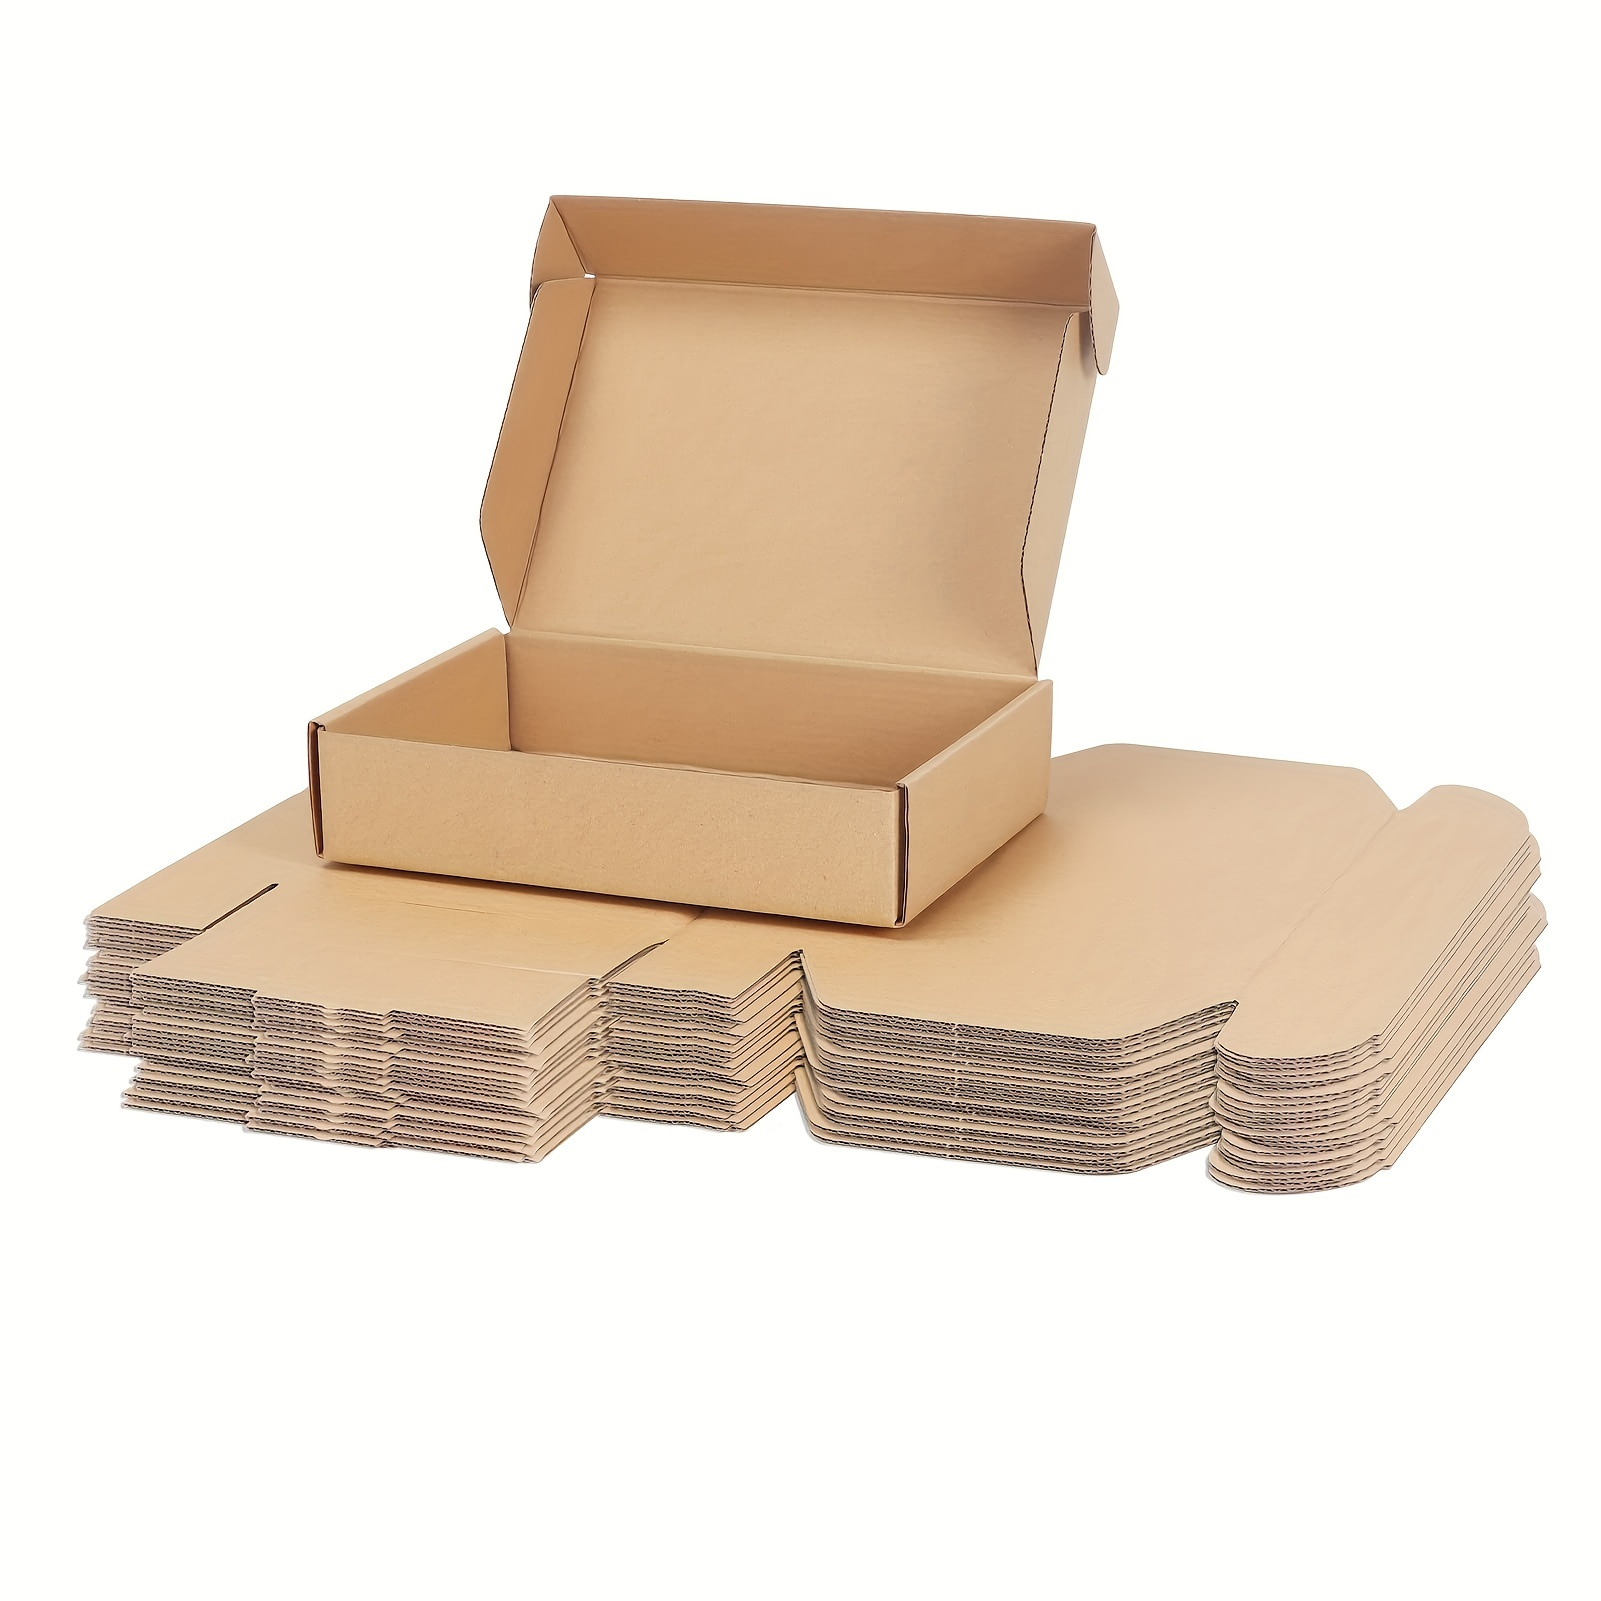 Cajas de cartón, cajas de envío, paquete de 15 cajas de cartón corrugado  reciclables, cajas de regalo pequeñas para envío, correo, embalaje de